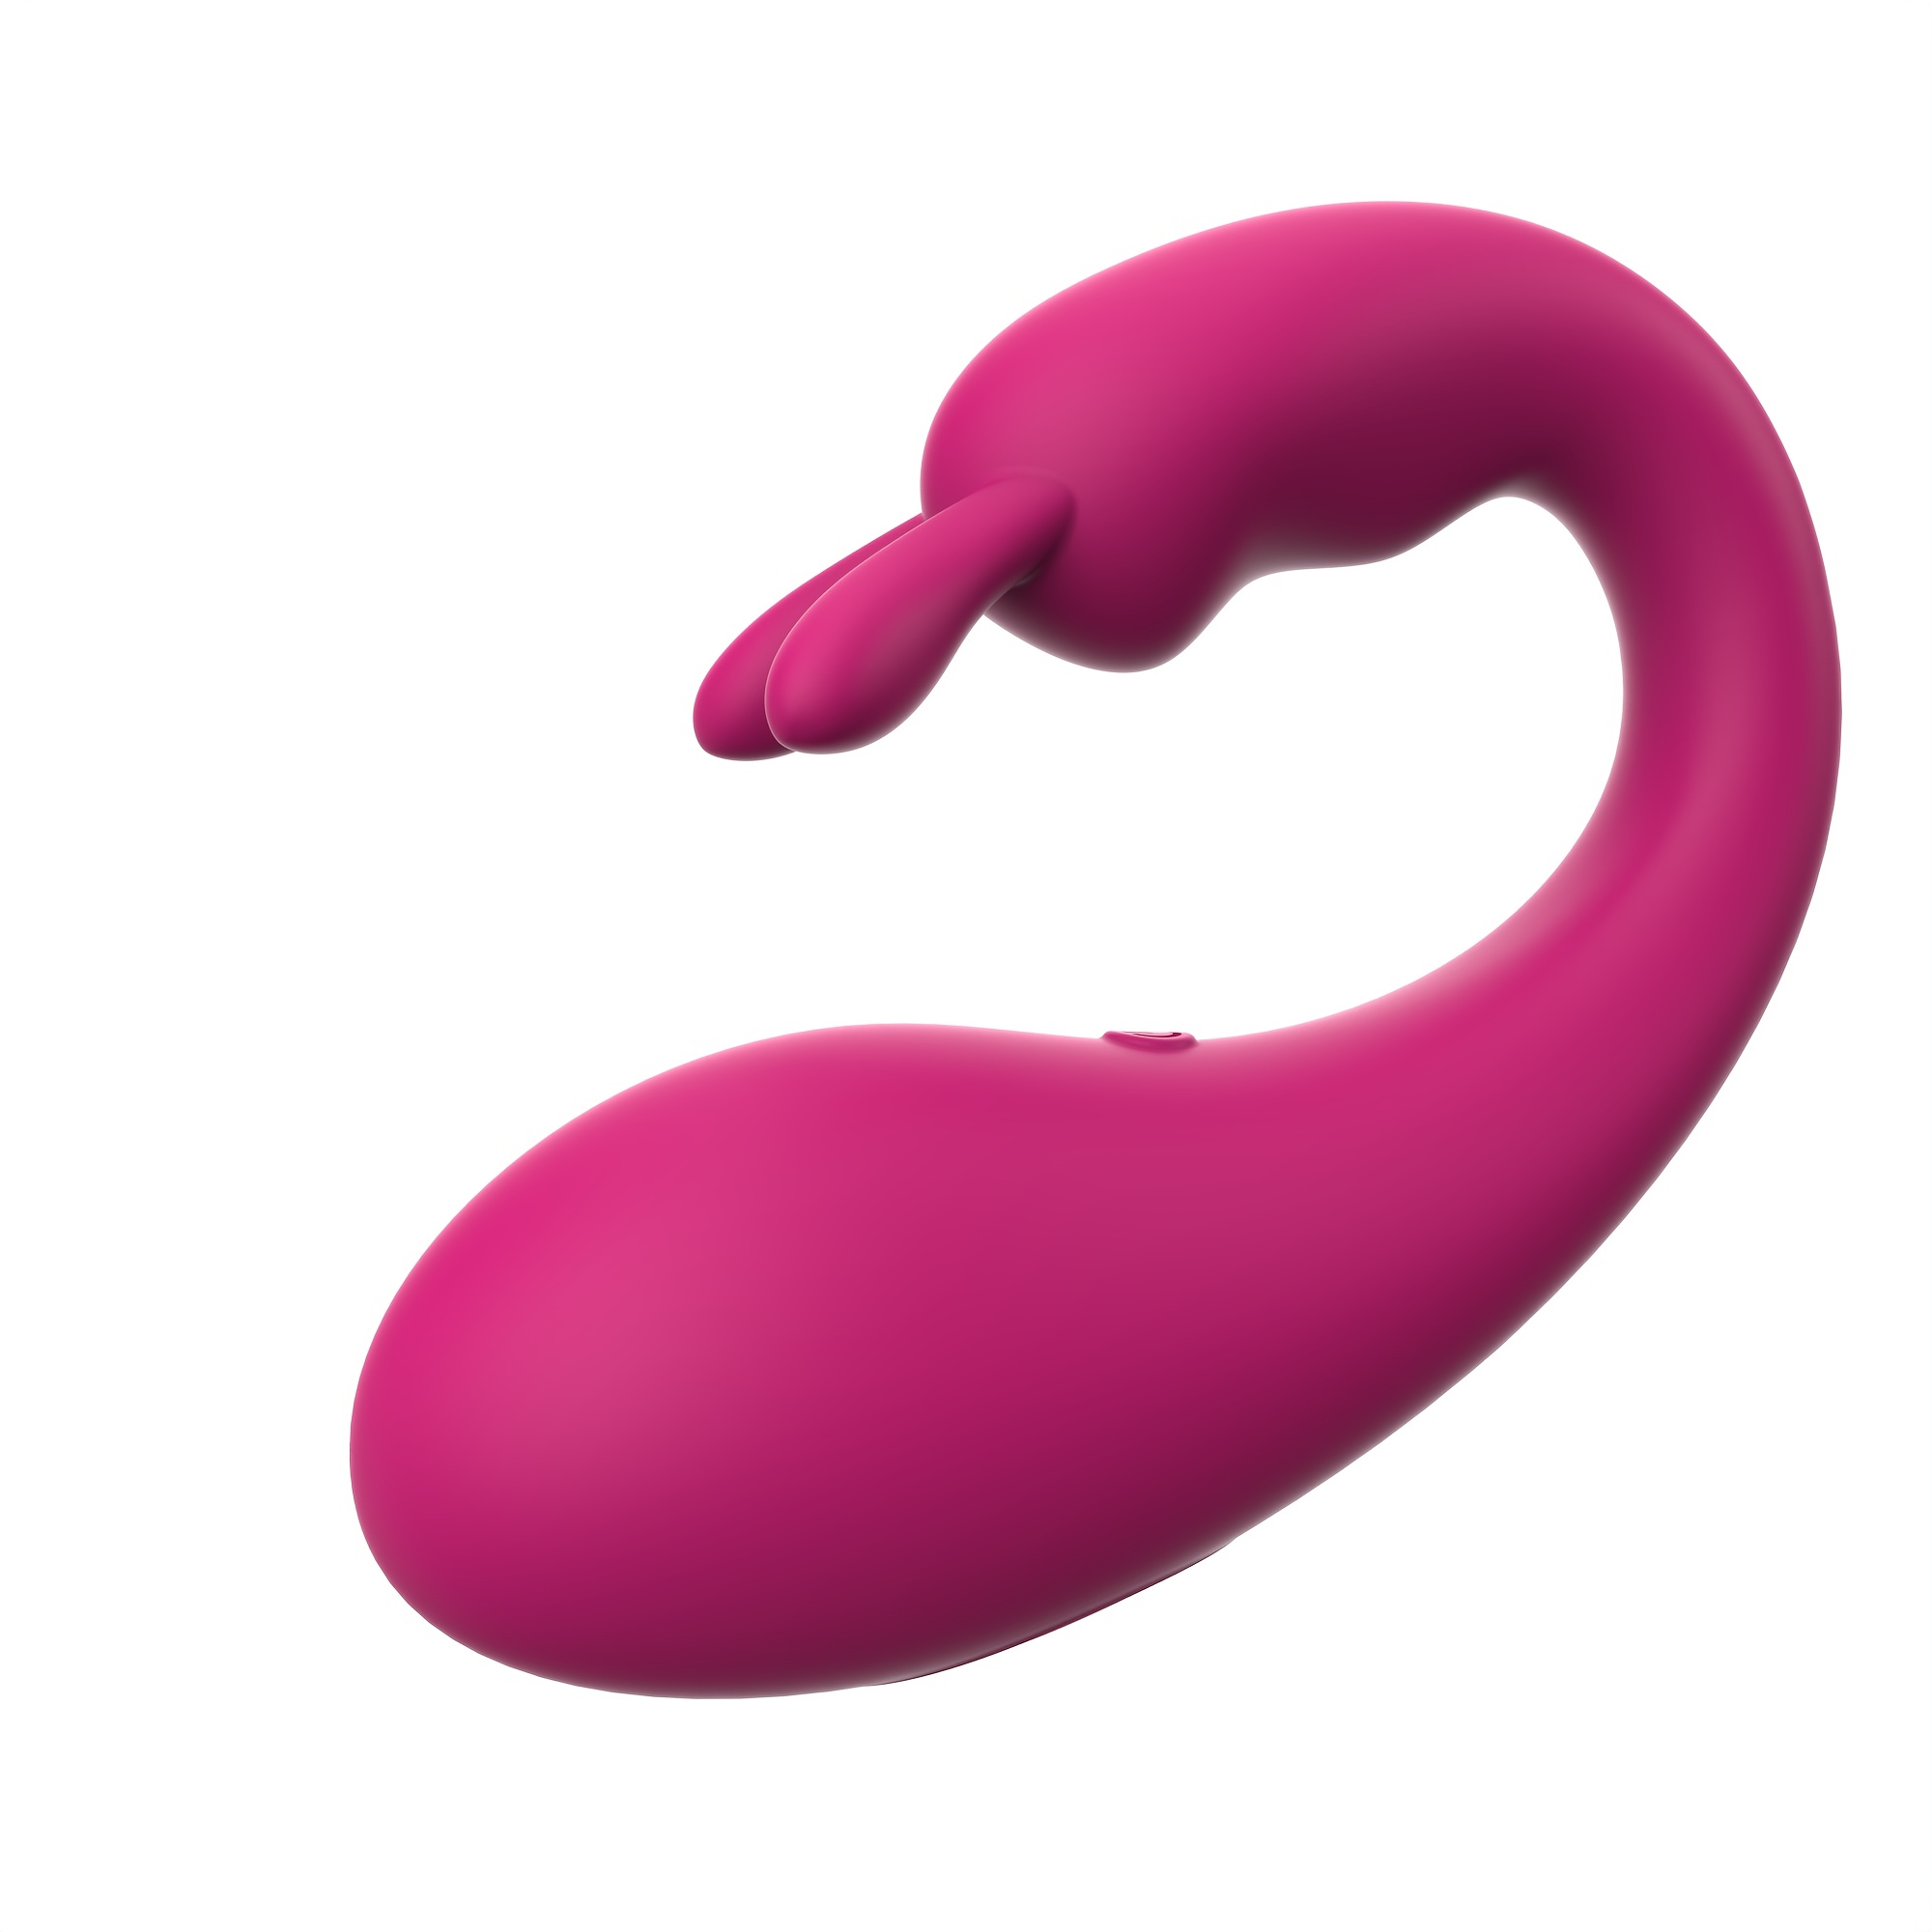  Remote Control G-Spot Panty Vibrator, Pink Fun